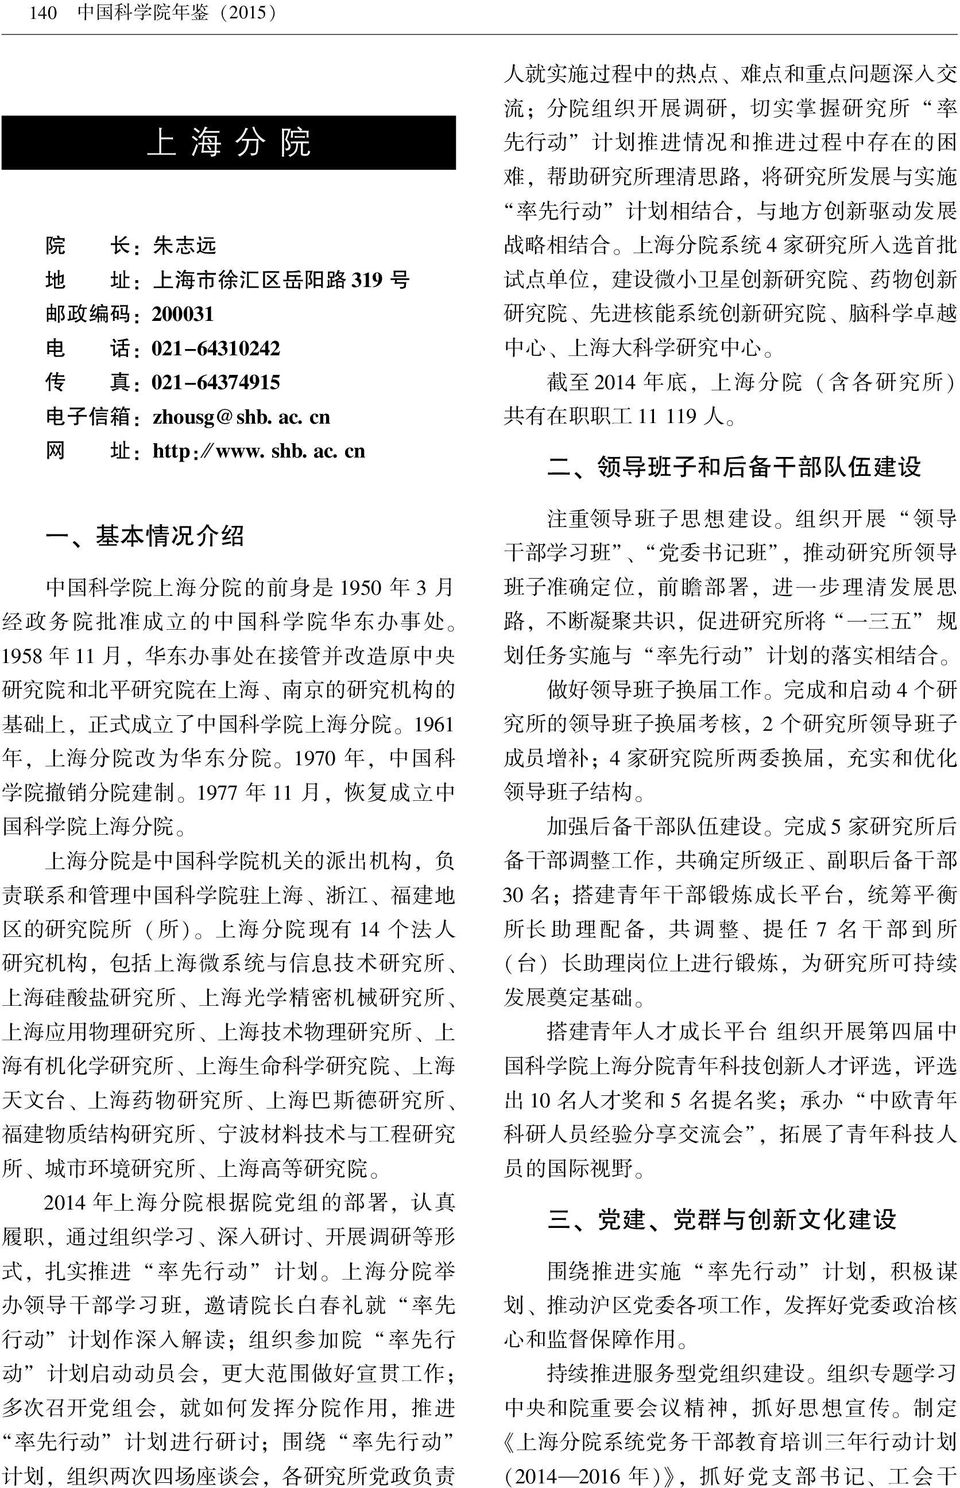 1961 年 ꎬ 上 海 分 院 改 为 华 东 分 院 ꎮ 1970 年 ꎬ 中 国 科 学 院 撤 销 分 院 建 制 ꎮ 1977 年 11 月 ꎬ 恢 复 成 立 中 国 科 学 院 上 海 分 院 ꎮ 上 海 分 院 是 中 国 科 学 院 机 关 的 派 出 机 构 ꎬ 负 责 联 系 和 管 理 中 国 科 学 院 驻 上 海 浙 江 福 建 地 区 的 研 究 院 所 ( 所